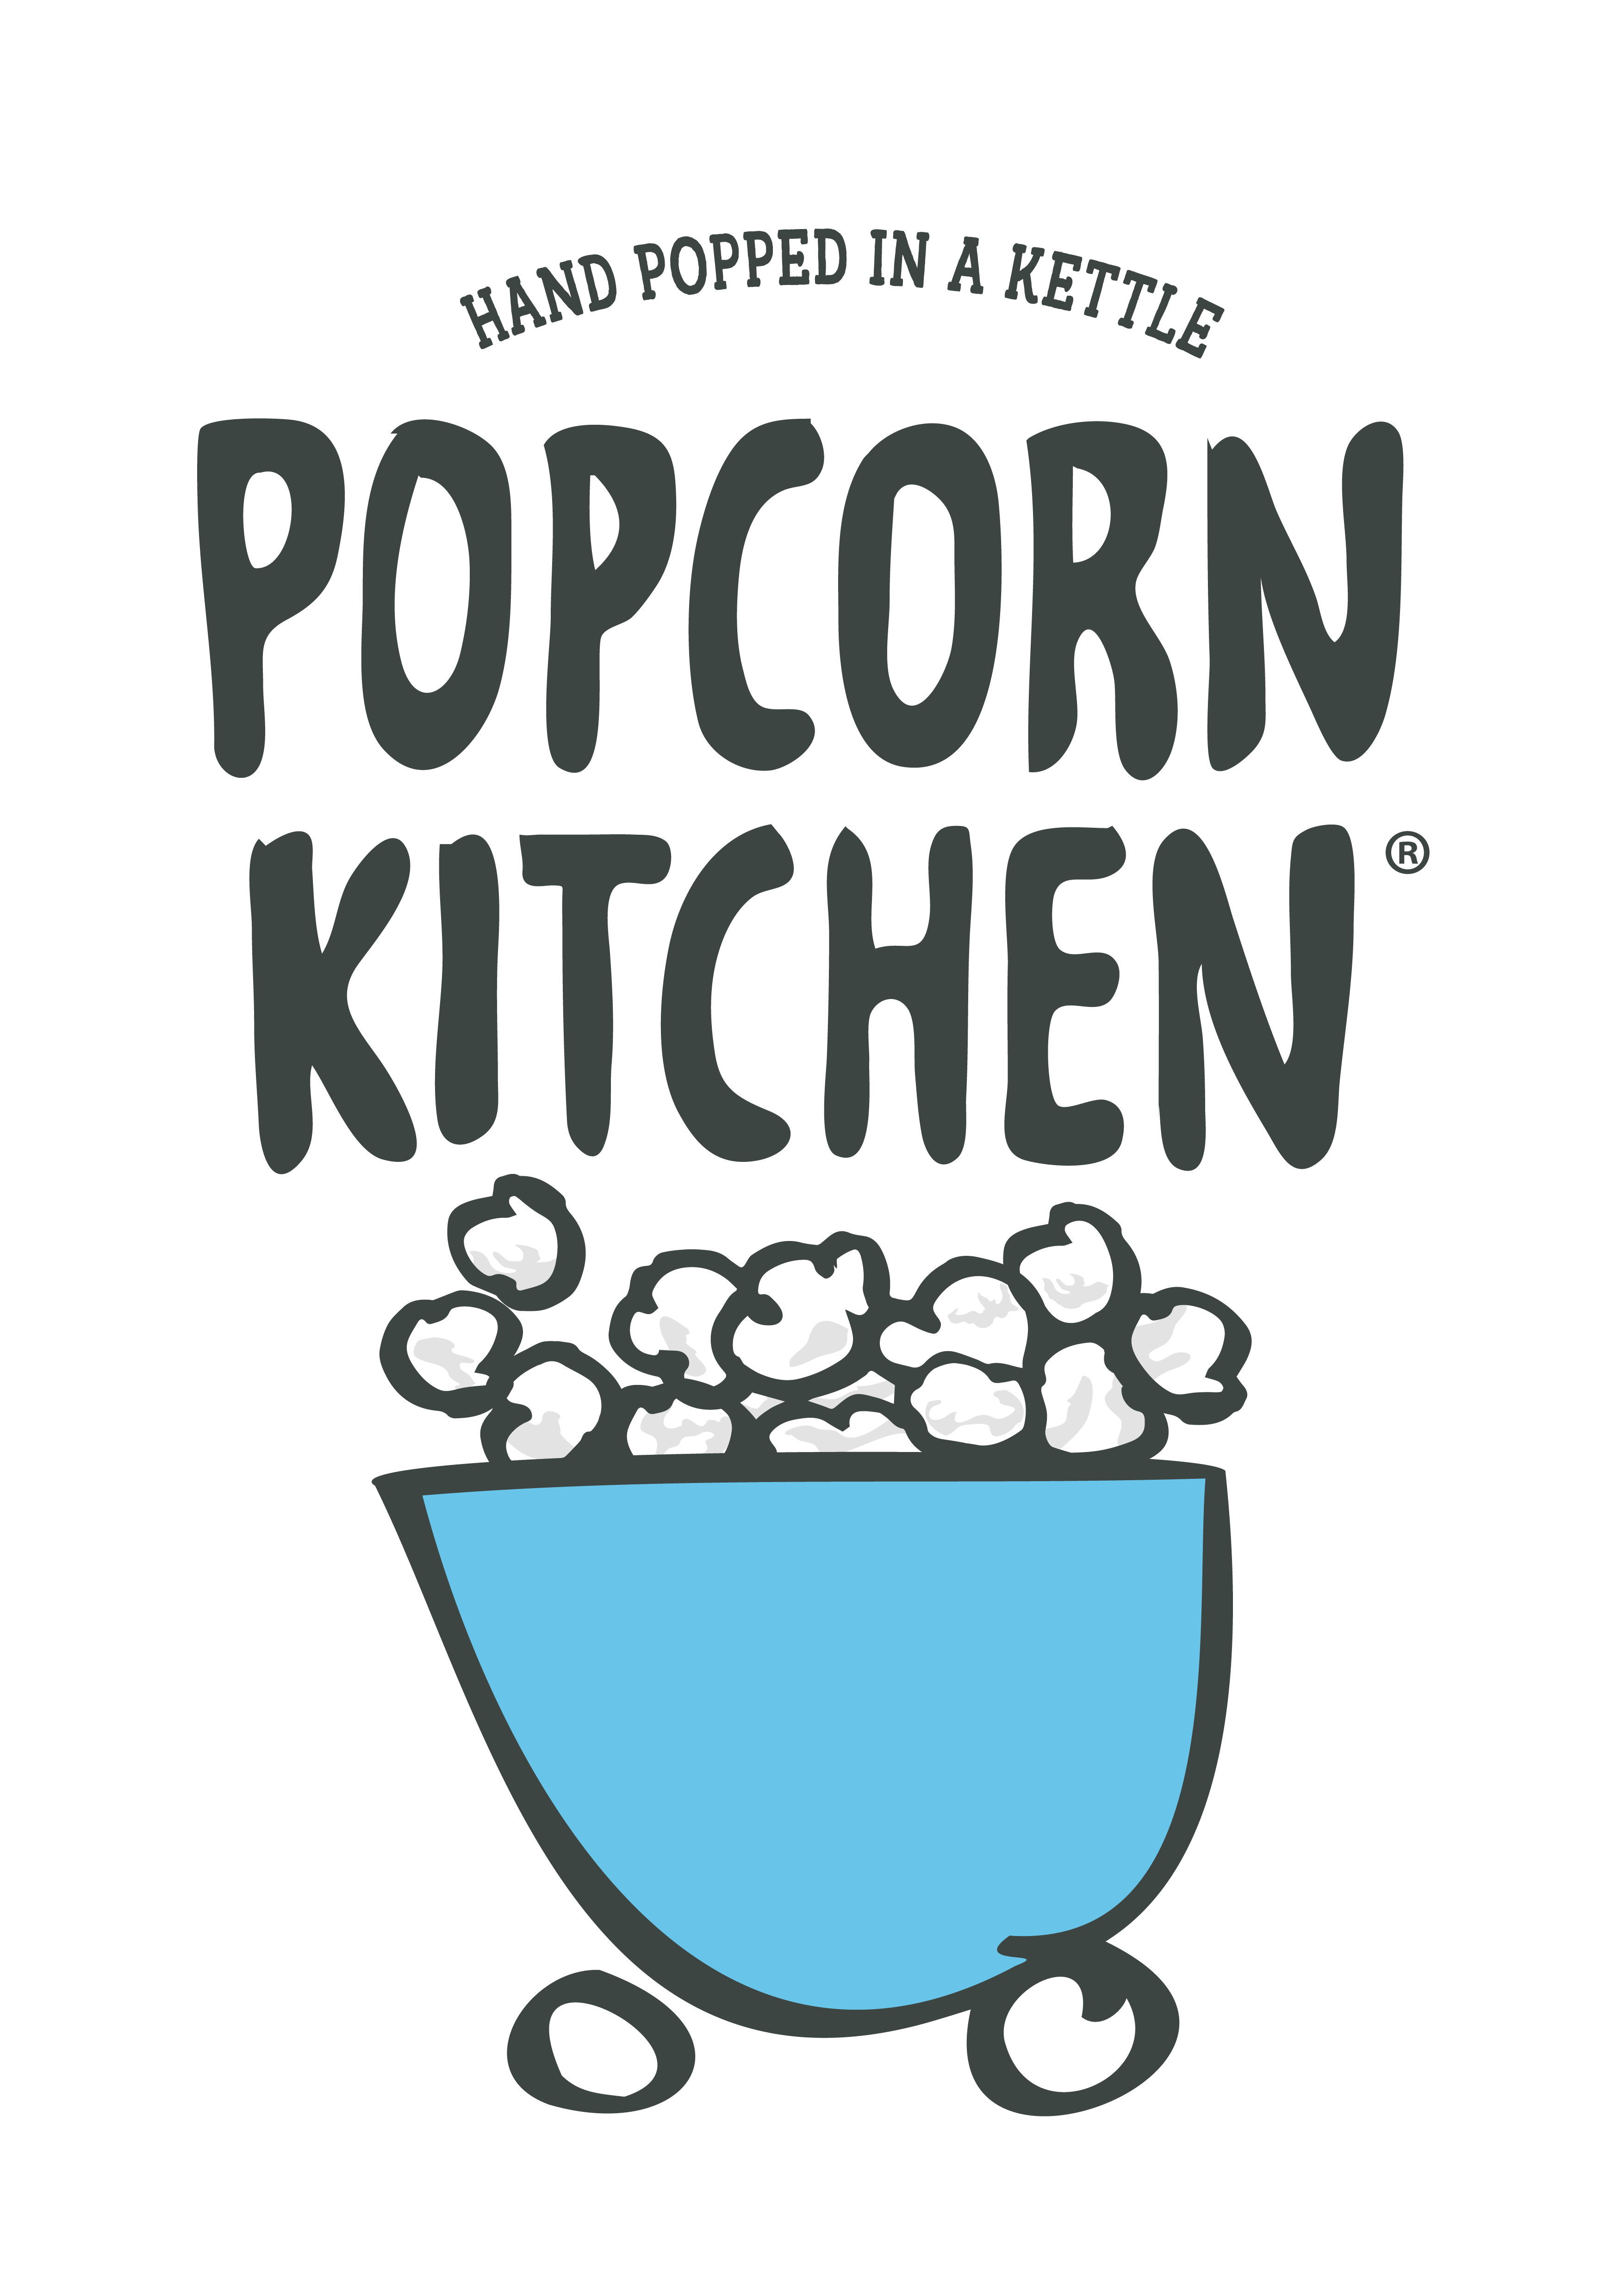 Popcorn Kitchen Ltd